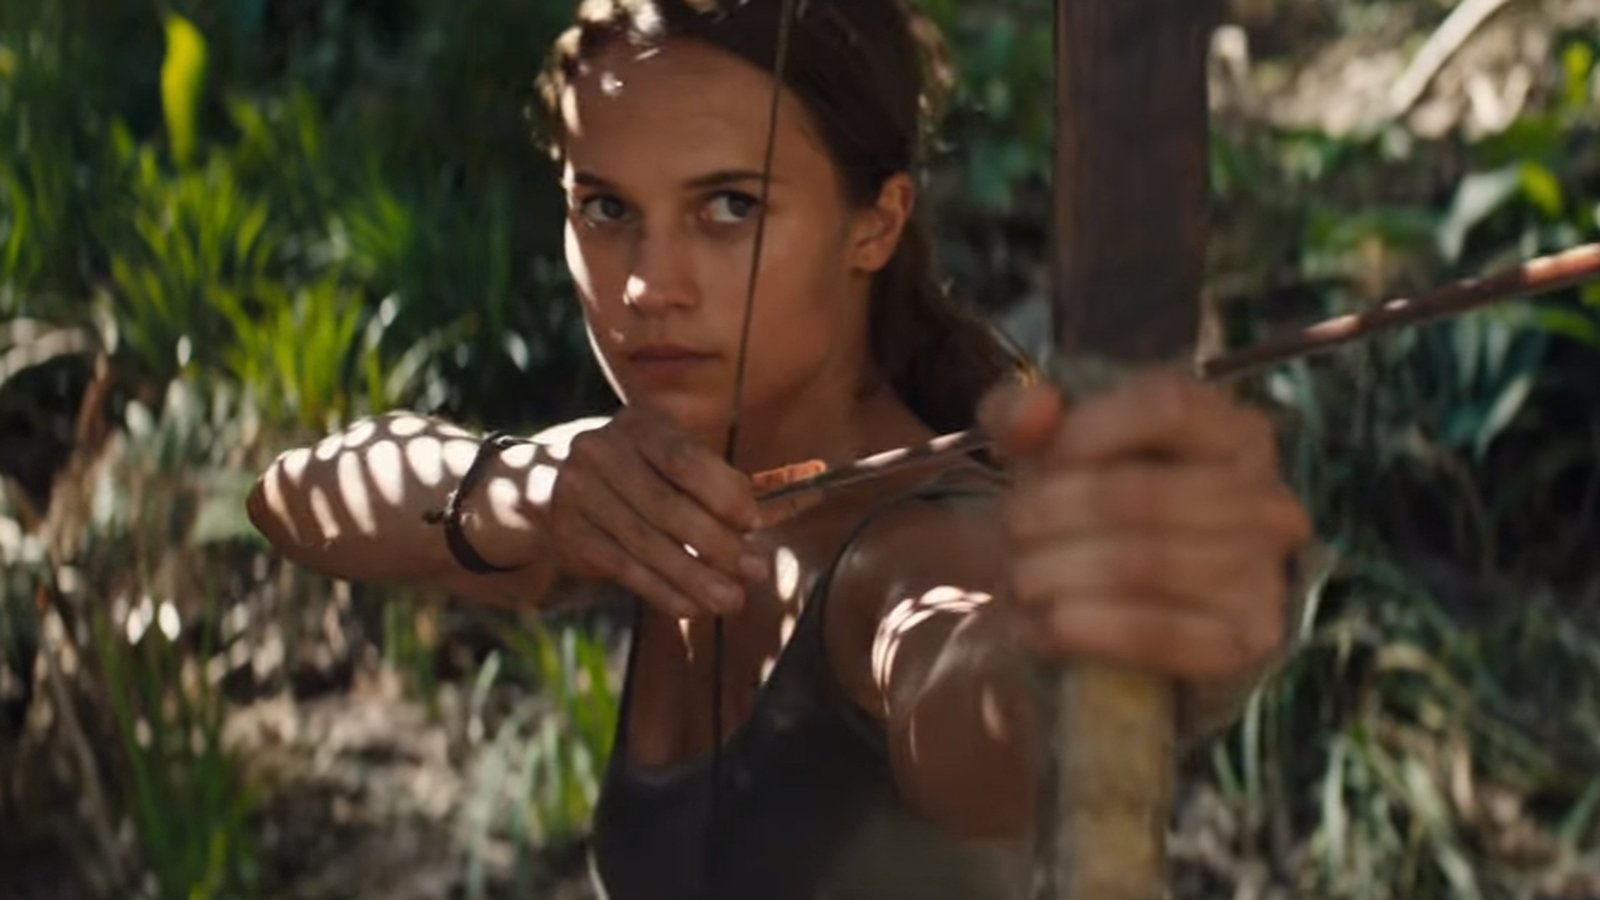 Alicia Vikander Leaps Into Action In Lara Croft Trailer 2898